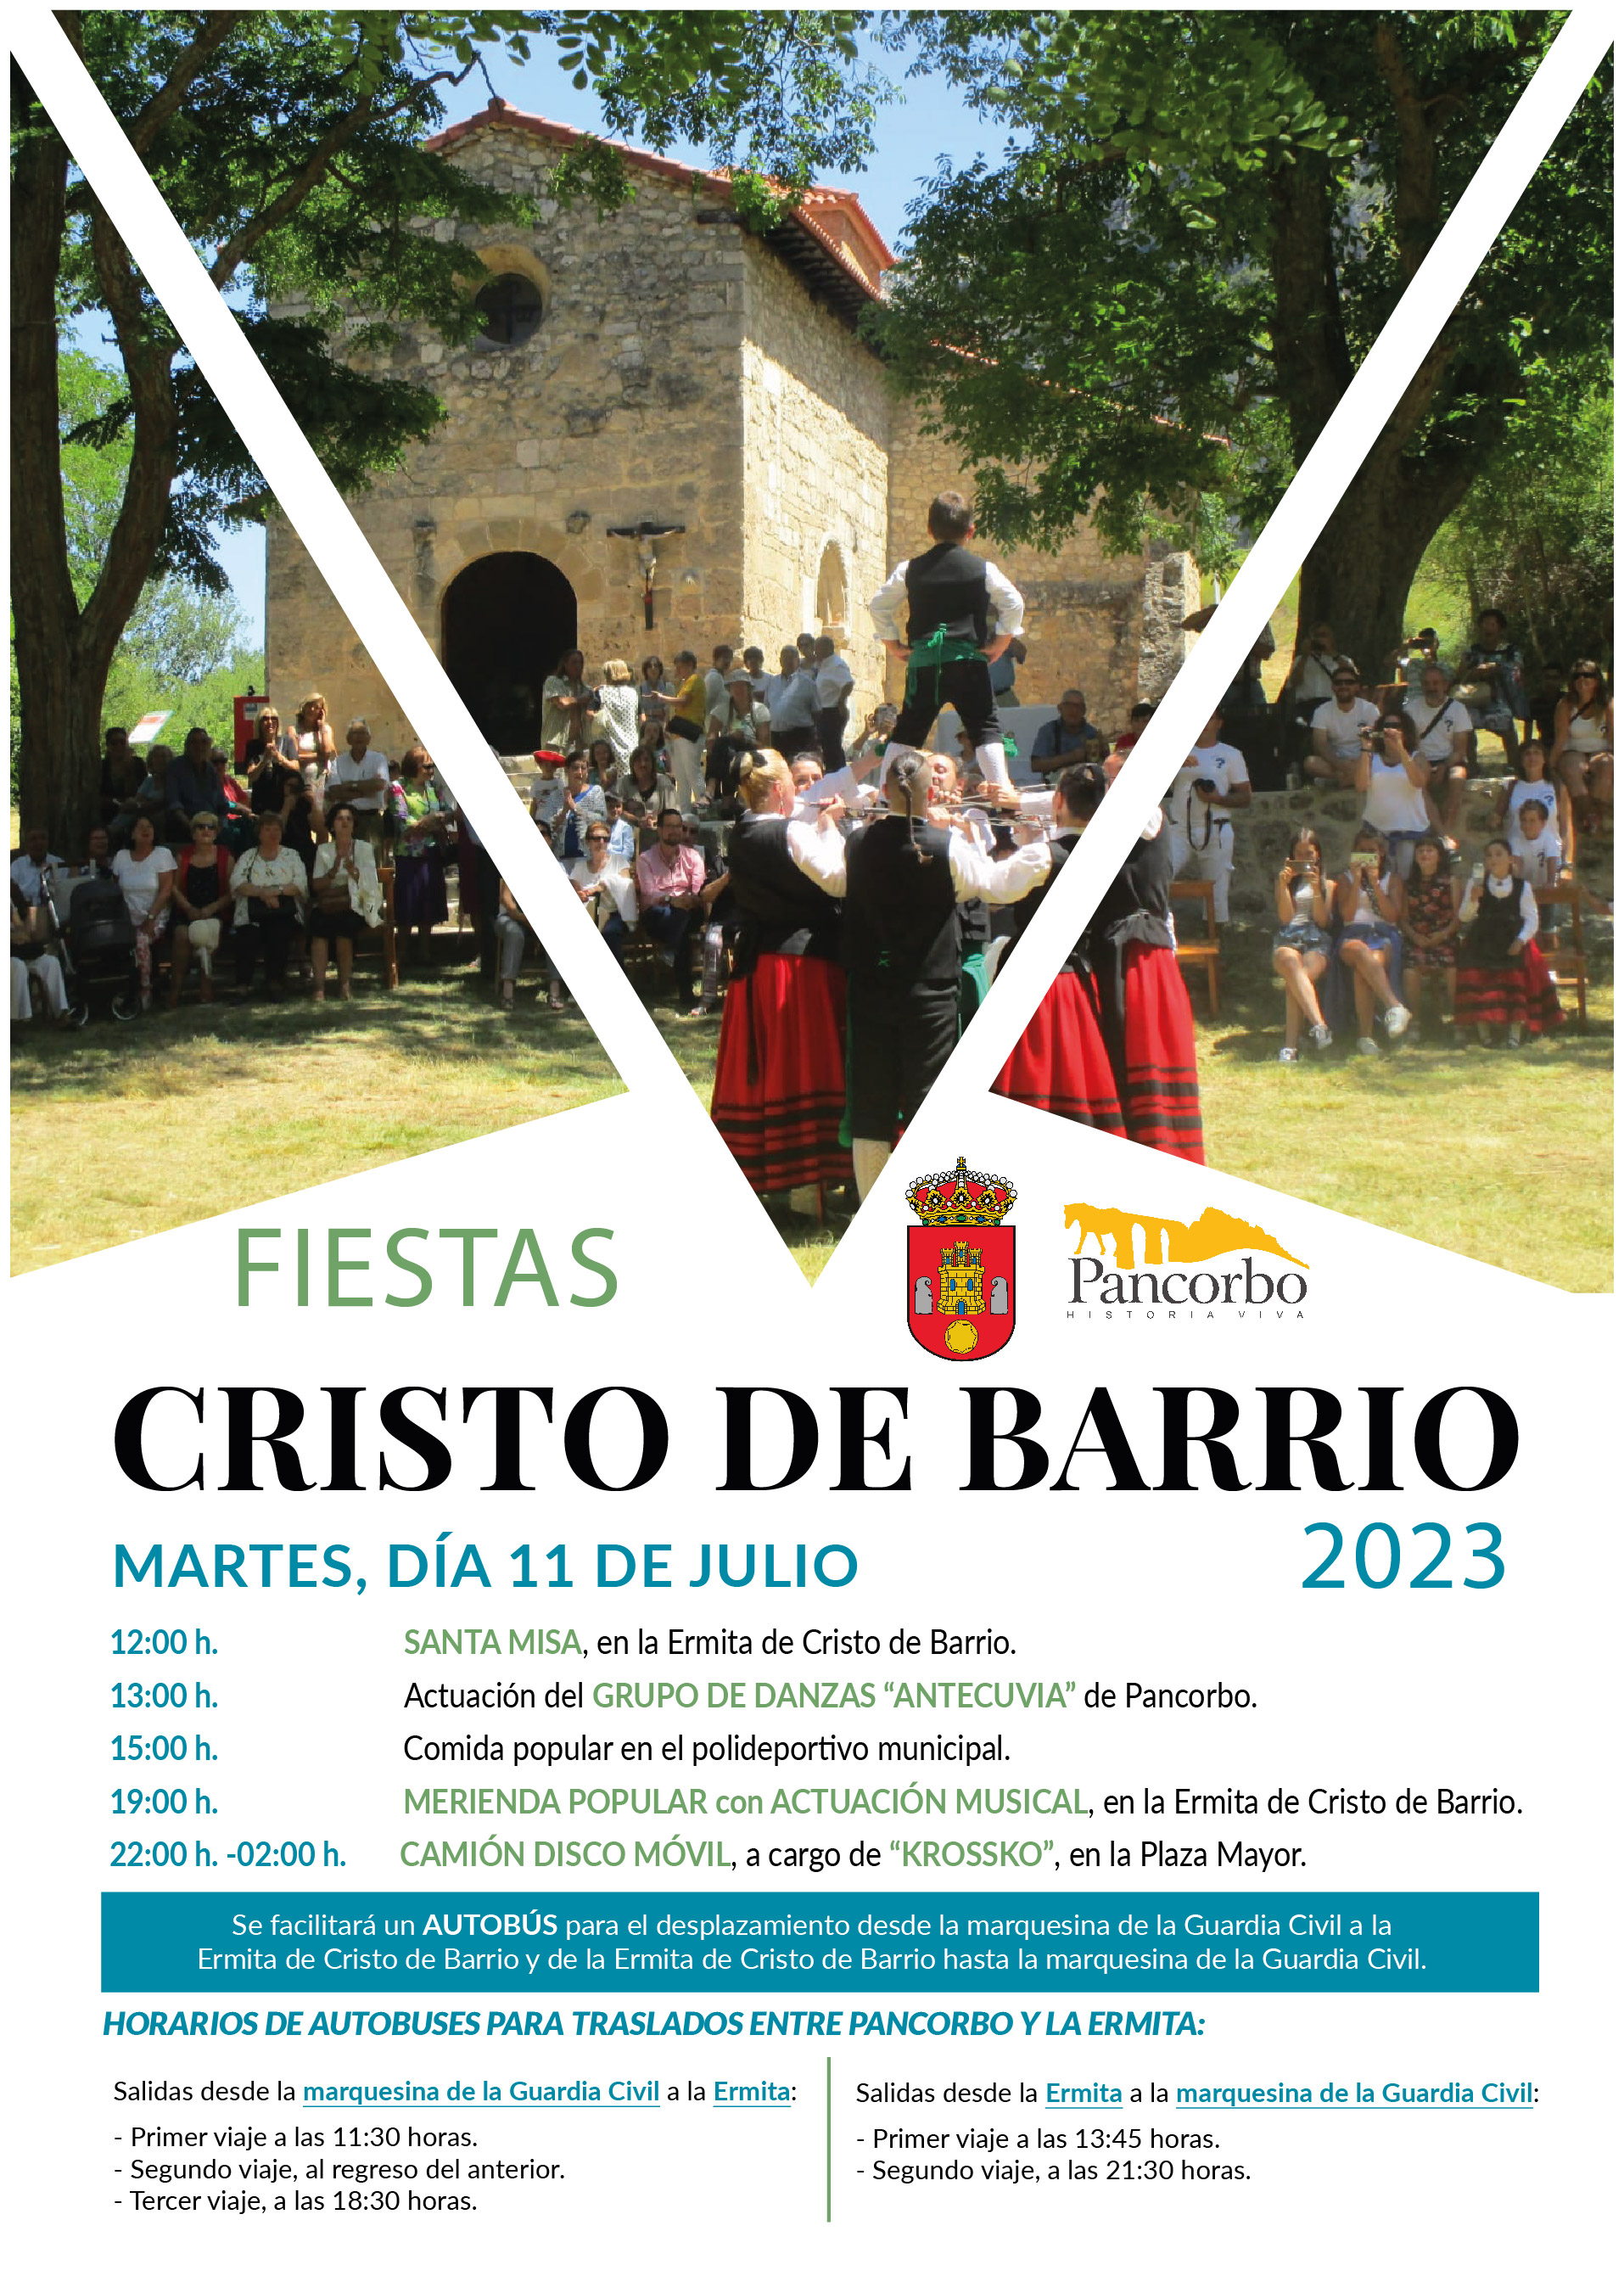 Fiestas de Cristo de Barrio 2023